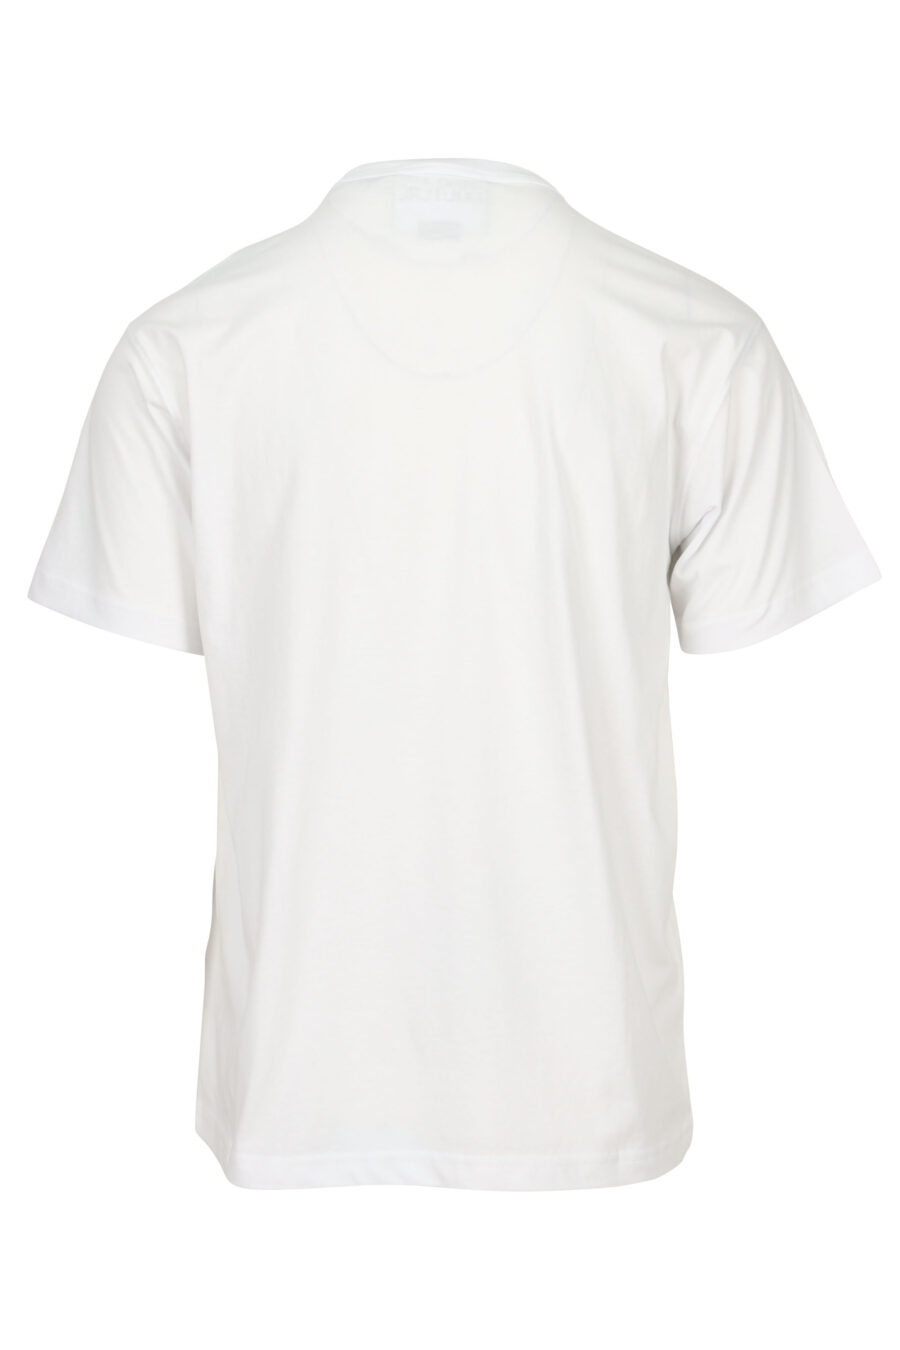 Camiseta blanca con maxilogo circular negro - 8052019580242 1